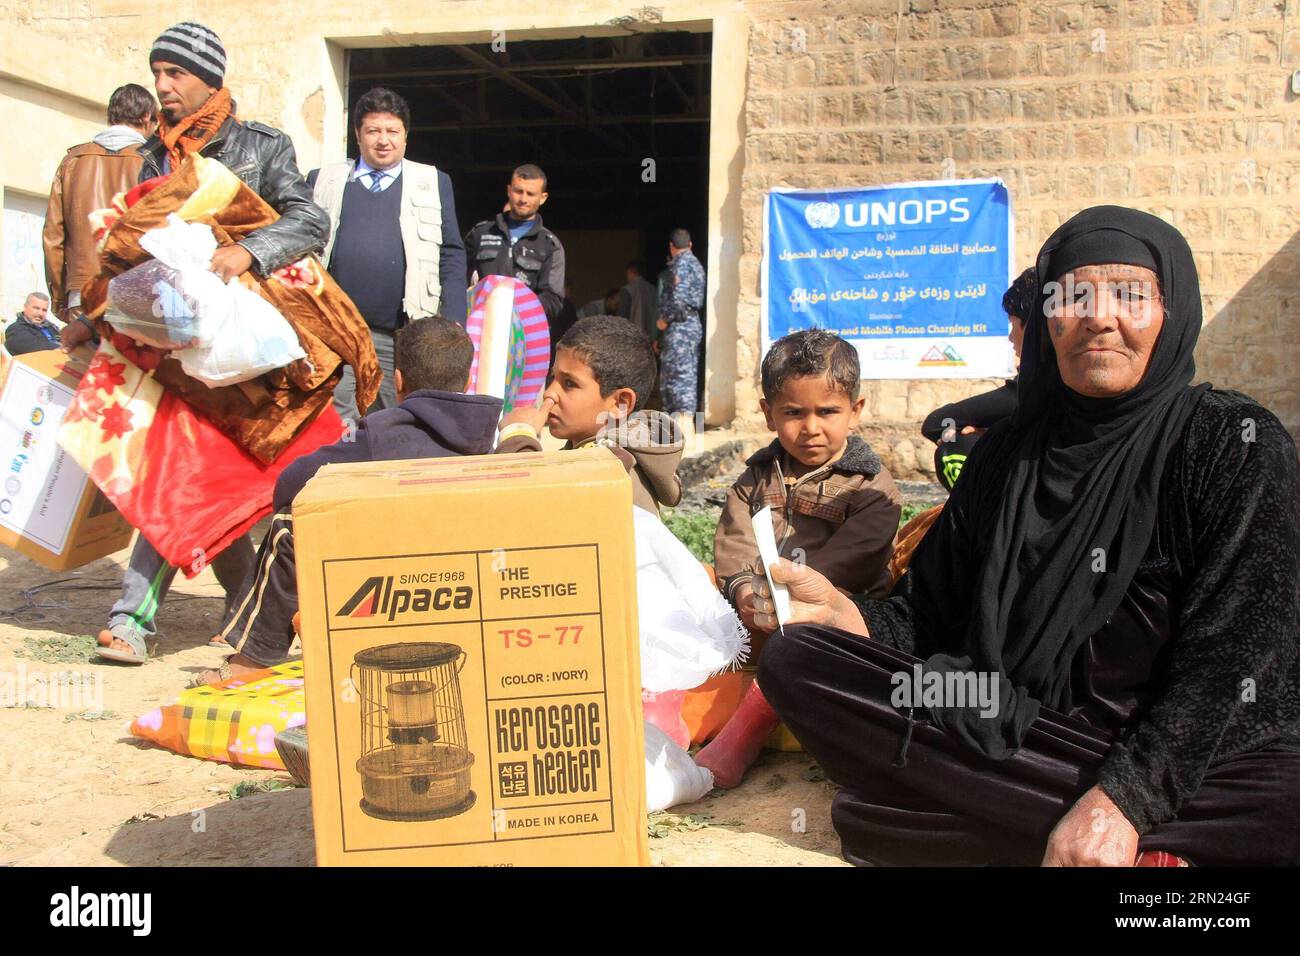 (150207) -- ERBIL, 07 de febrero de 2015 -- Una anciana se sienta en el suelo con un calentador que acaba de recibir de trabajadores humanitarios en Erbil, la capital de la región kurda iraquí, el 7 de febrero de 2015. Muchos iraquíes huyeron de Mosul en el norte de Irak después de que los militantes del Estado Islámico tomaron la ciudad y tomaron instalaciones públicas en las afueras de Erbil como sus hogares temporales. IRAK-ERBIL-DESPLAZADA YaserxJawad PUBLICATIONxNOTxINxCHN Erbil 07 2015 de febrero a la anciana mujer se sienta EN el suelo con un calentador que acaba de recibir de los trabajadores humanitarios en Erbil, la ciudad capital de la región kurda iraquí, EL 7 2015 de febrero l Foto de stock